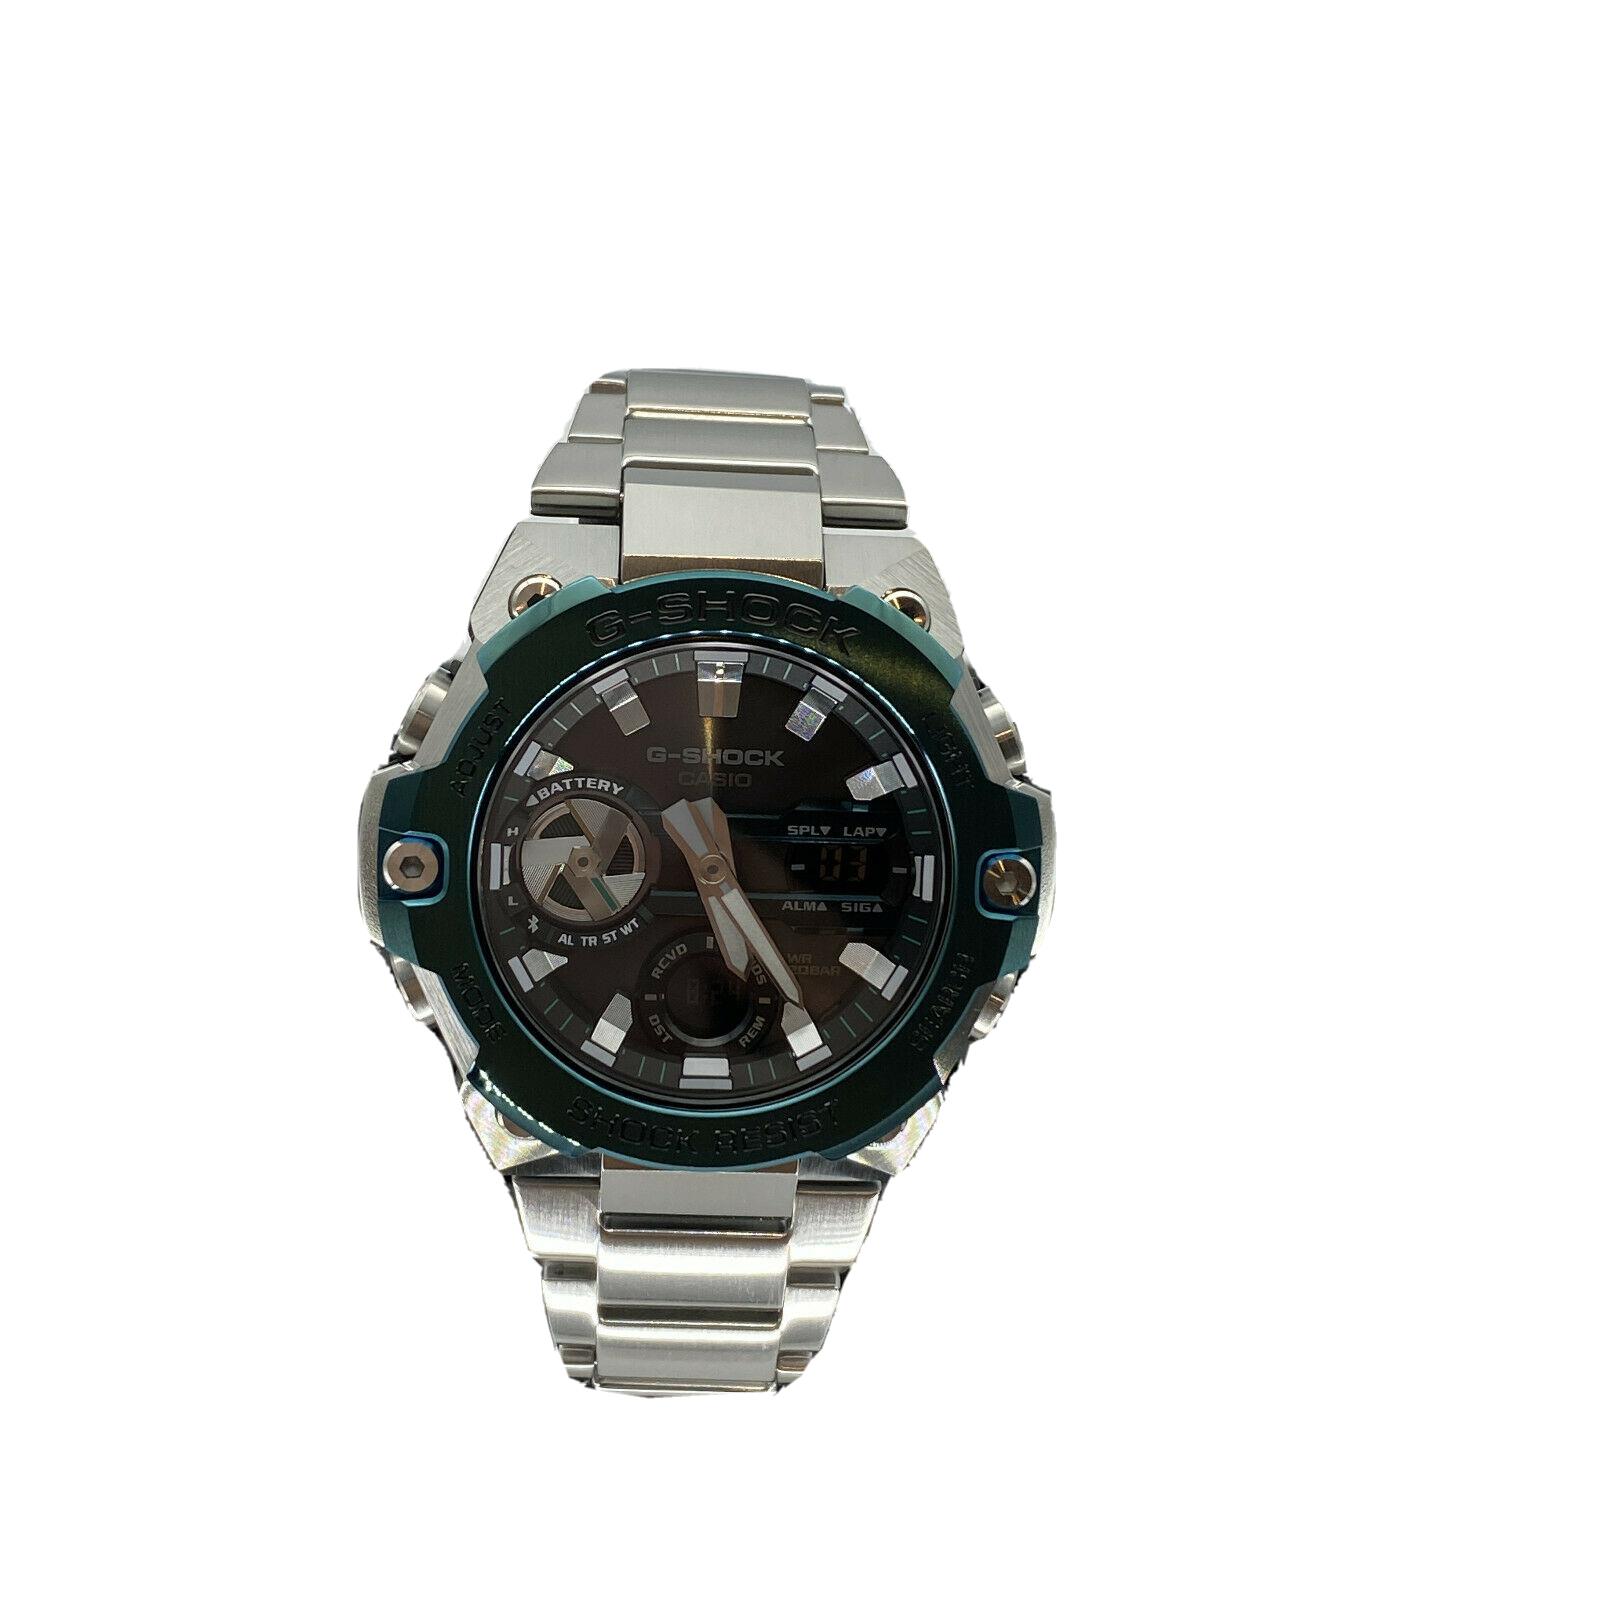 Casio G Shock G-steel Slim Analog Digital Limited Edition Watch GSTB400CD-1A3 - Black Dial, Silver Band, Green Bezel